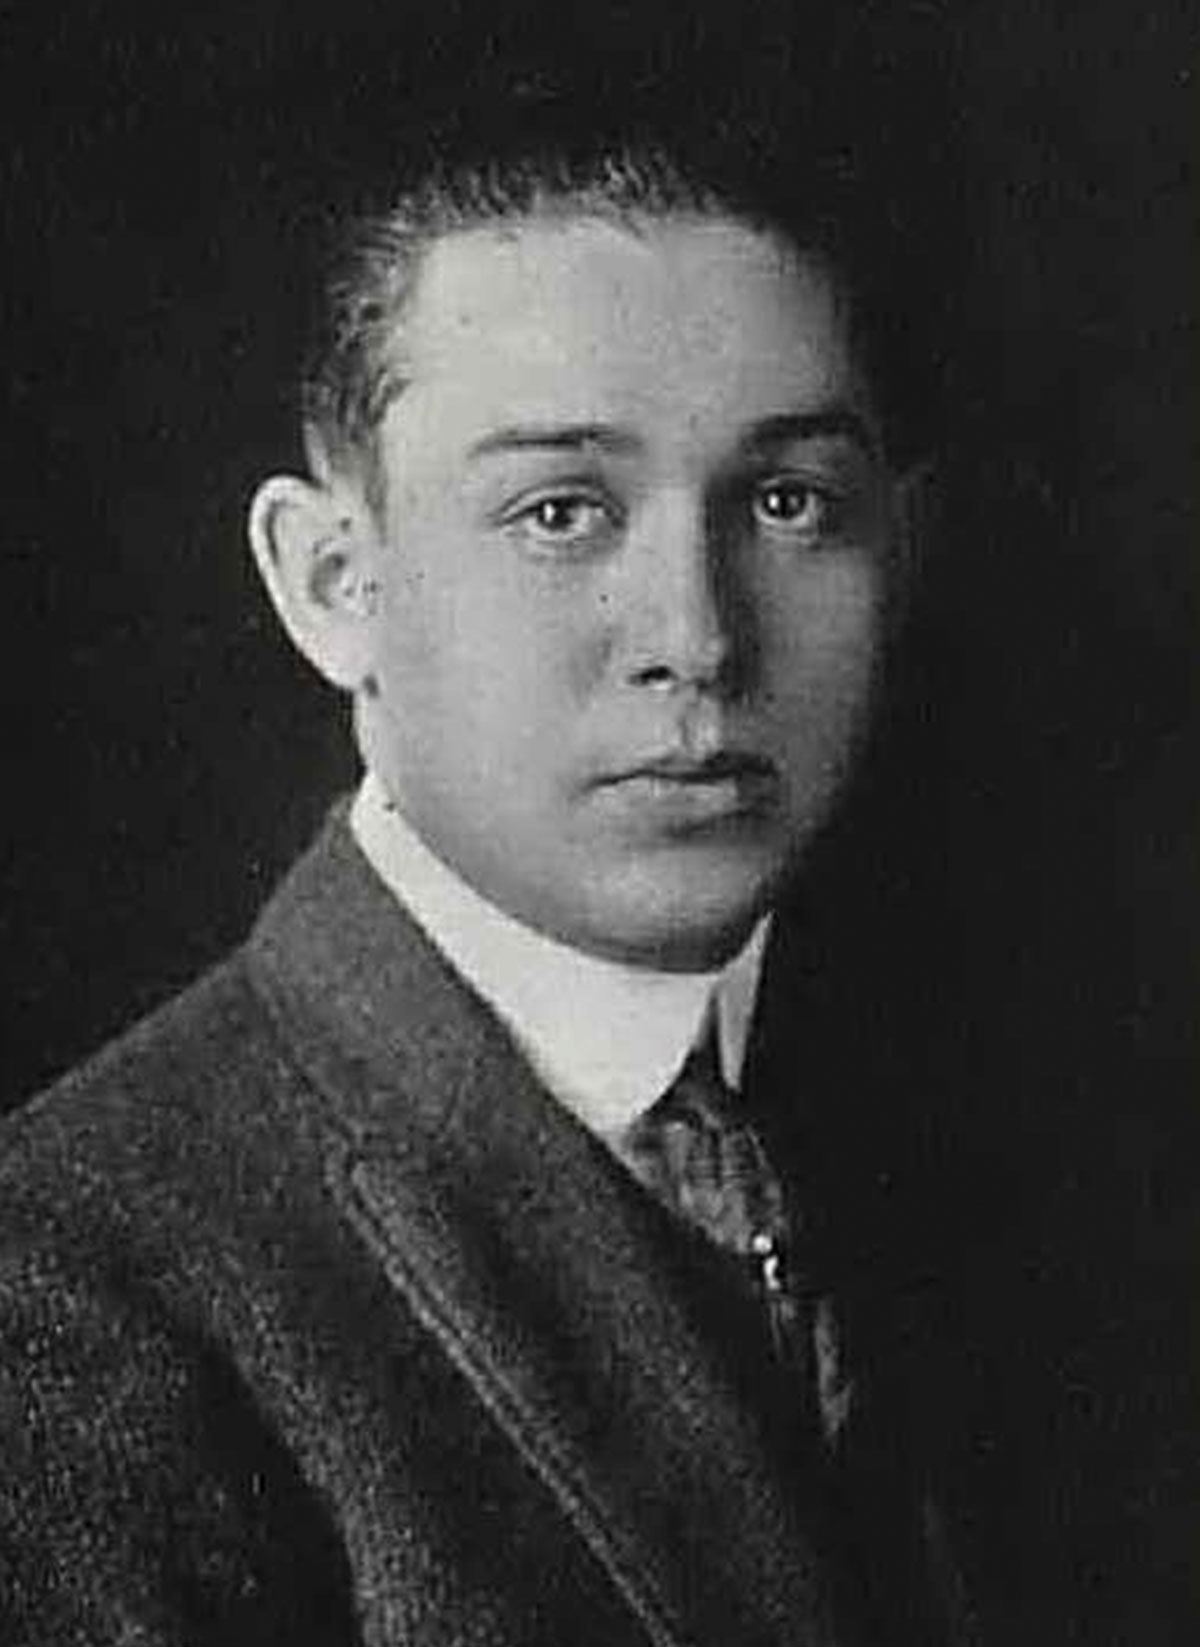 Robert Preiskel, Class of 1915